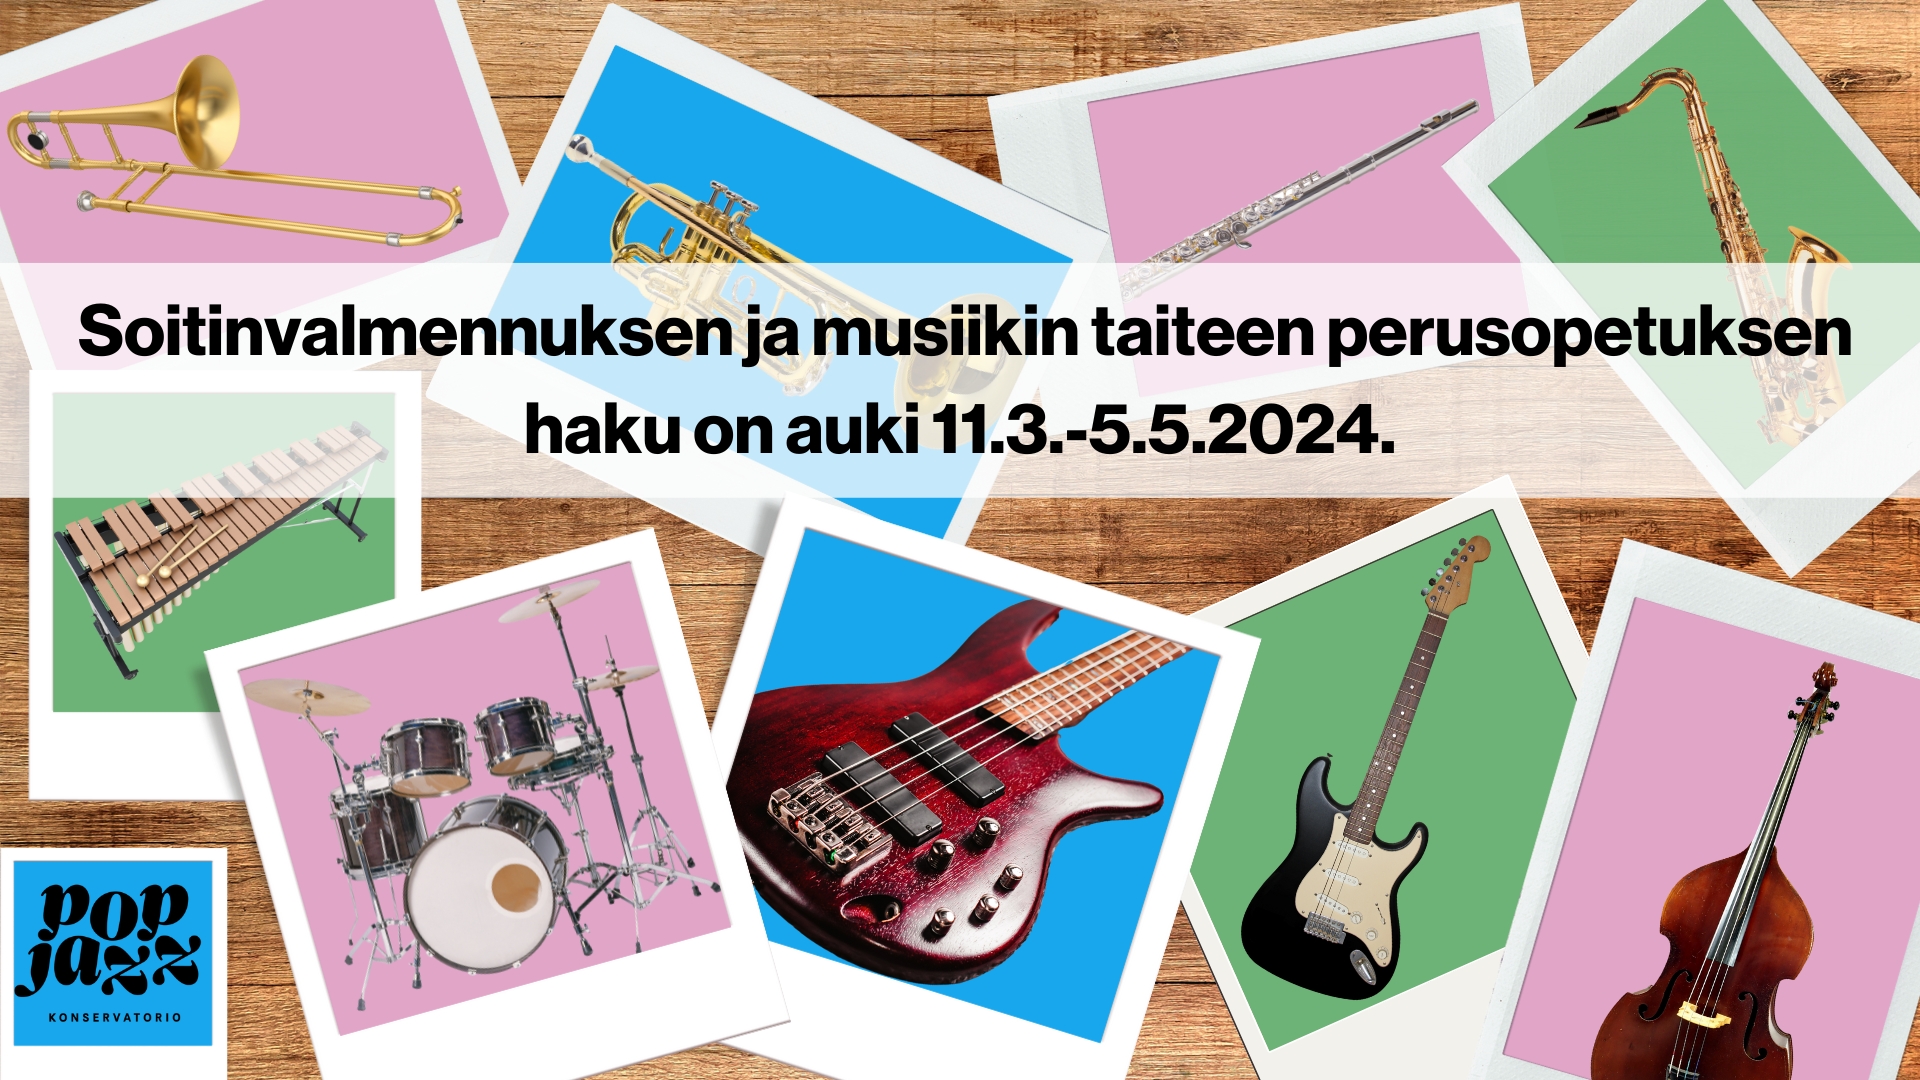 Soitinvalmennuksen ja musiikin taiteen perusopetuksen haku on auki 11.3.-5.5.2024.